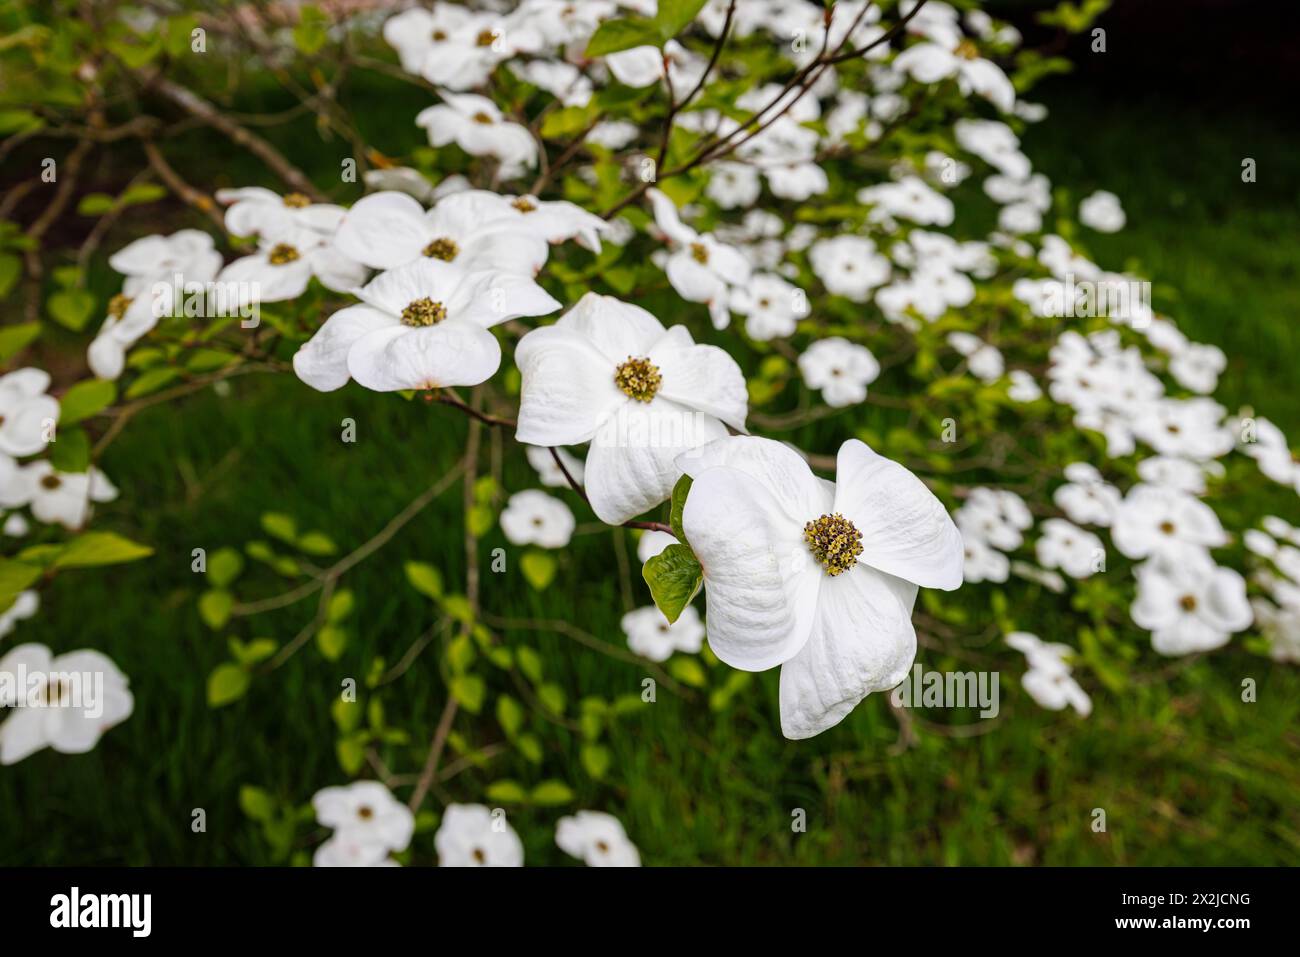 Grandes bractées blanches (pas de pétales) de Cornus 'Ormonde' dans RHS Garden, Wisley, Surrey, sud-est de l'Angleterre au printemps Banque D'Images